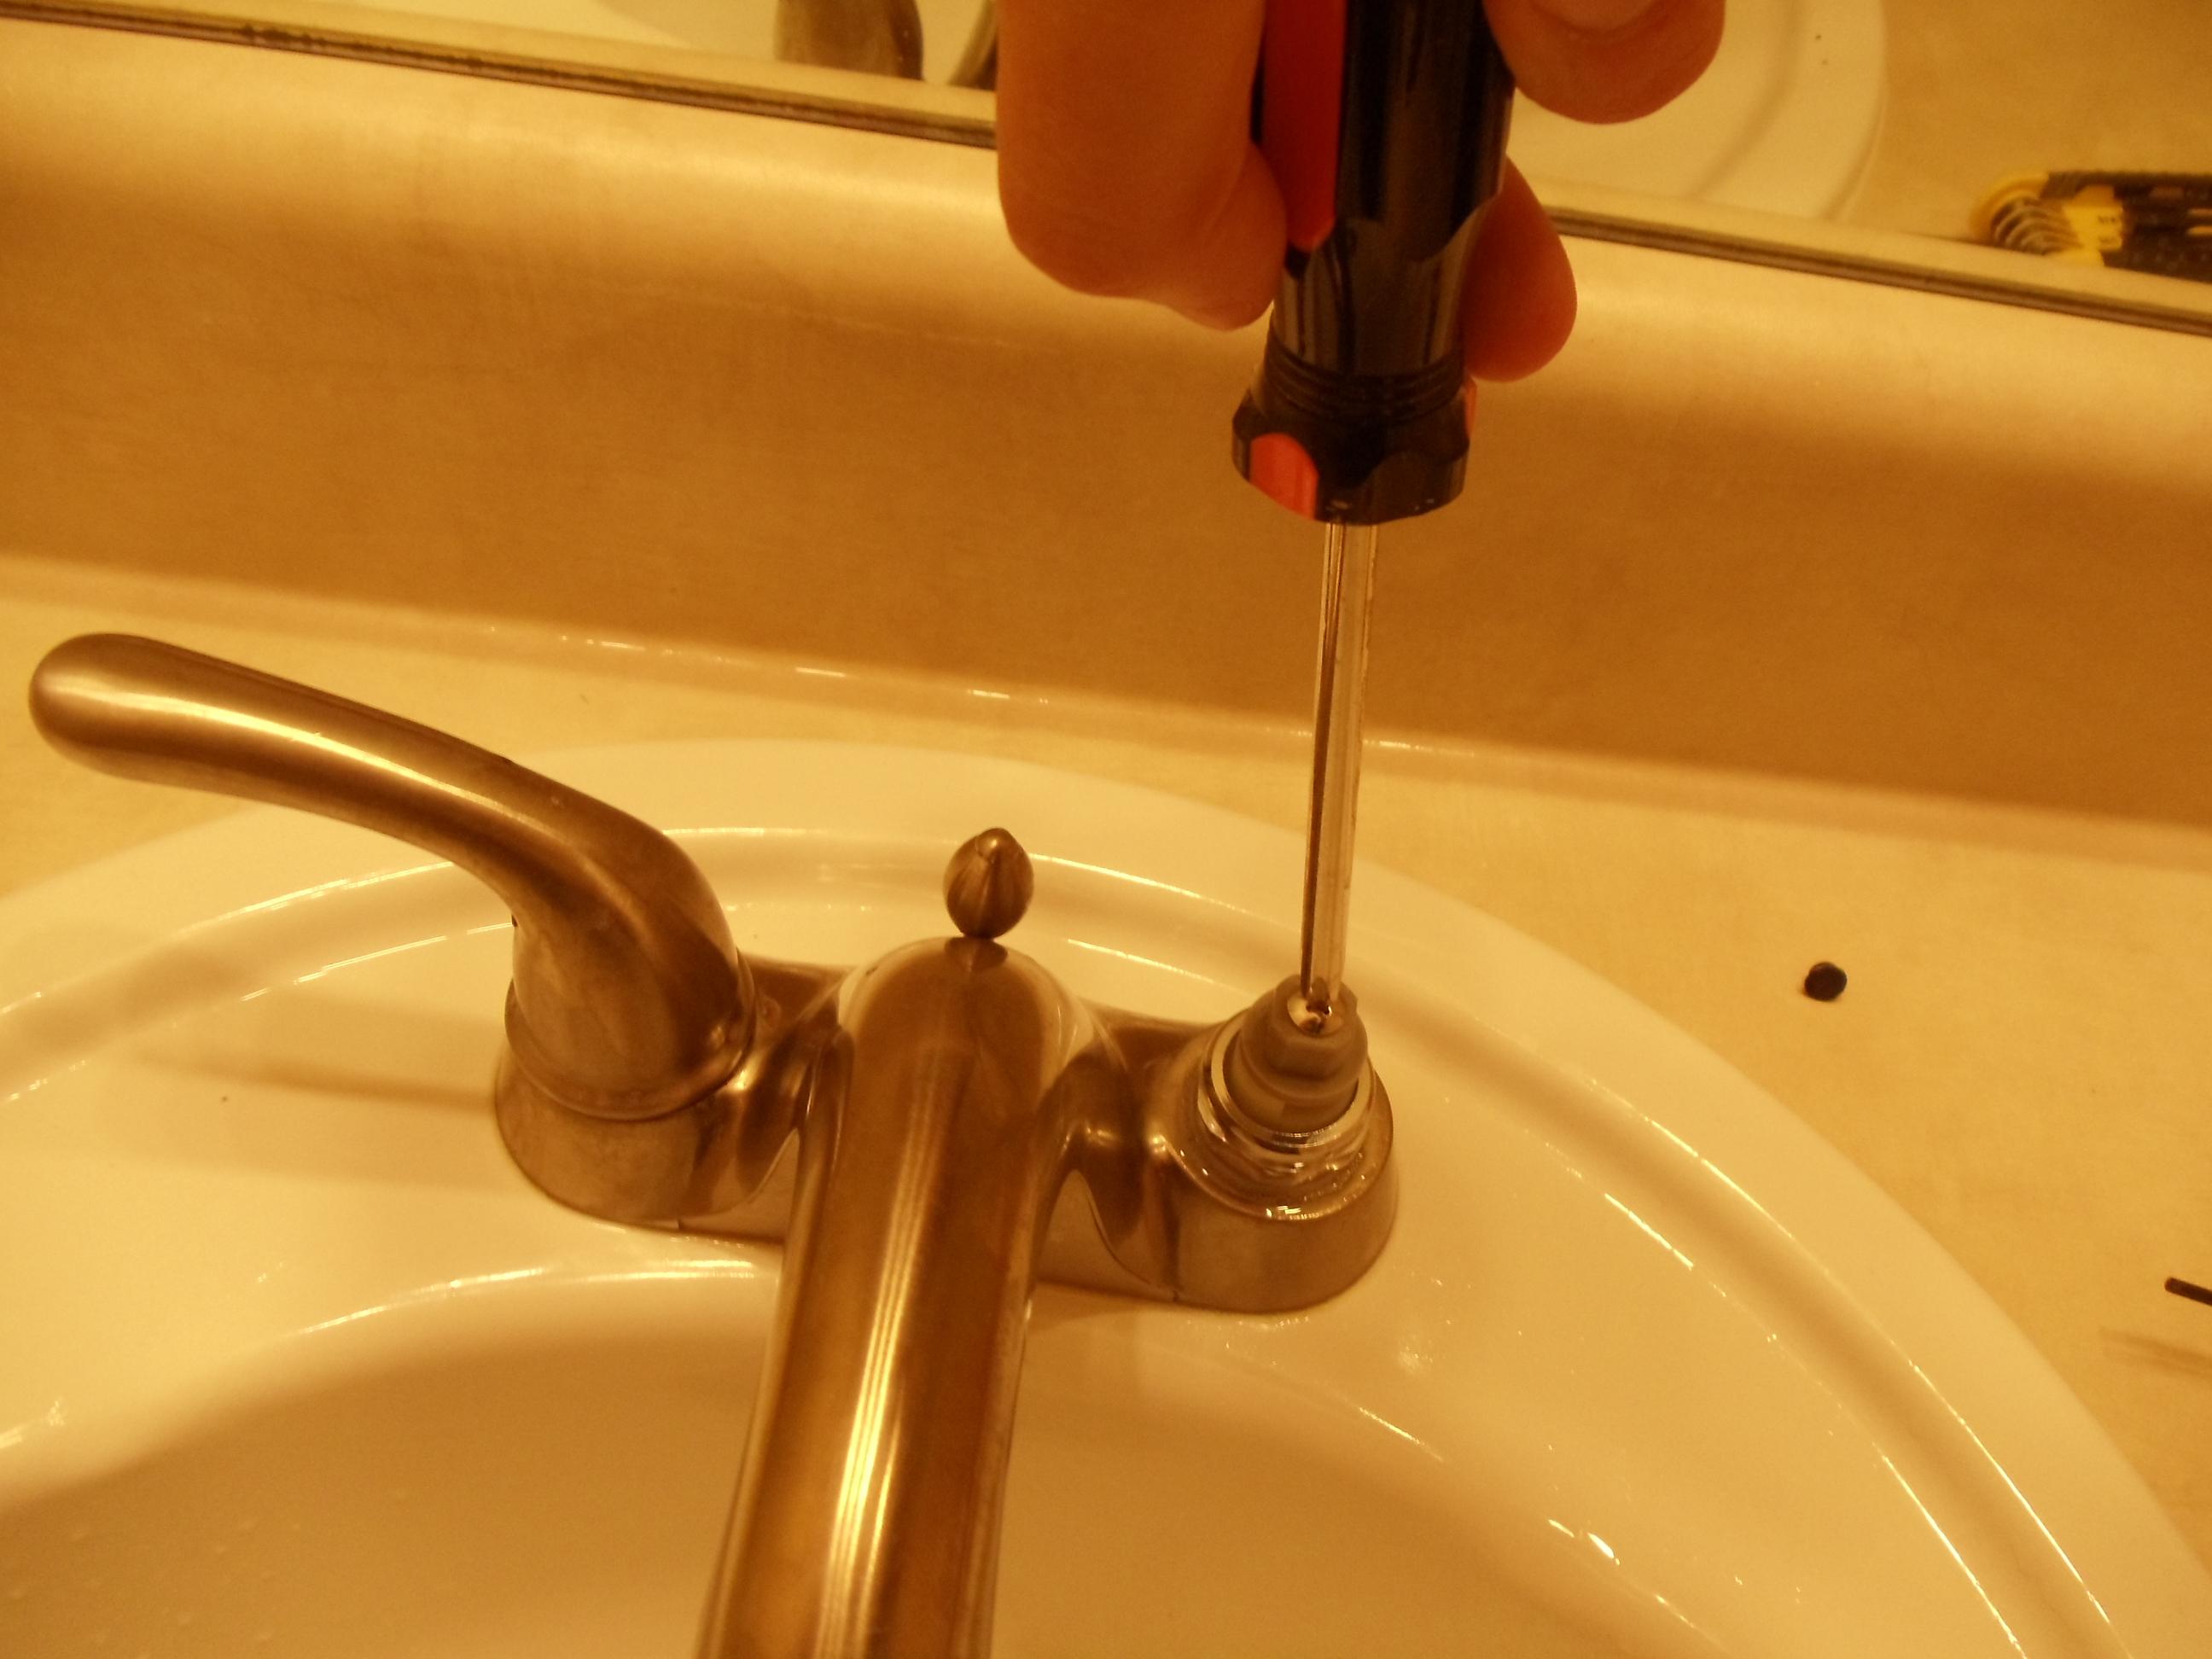 fix my bathroom sink faucet that sprays sideways